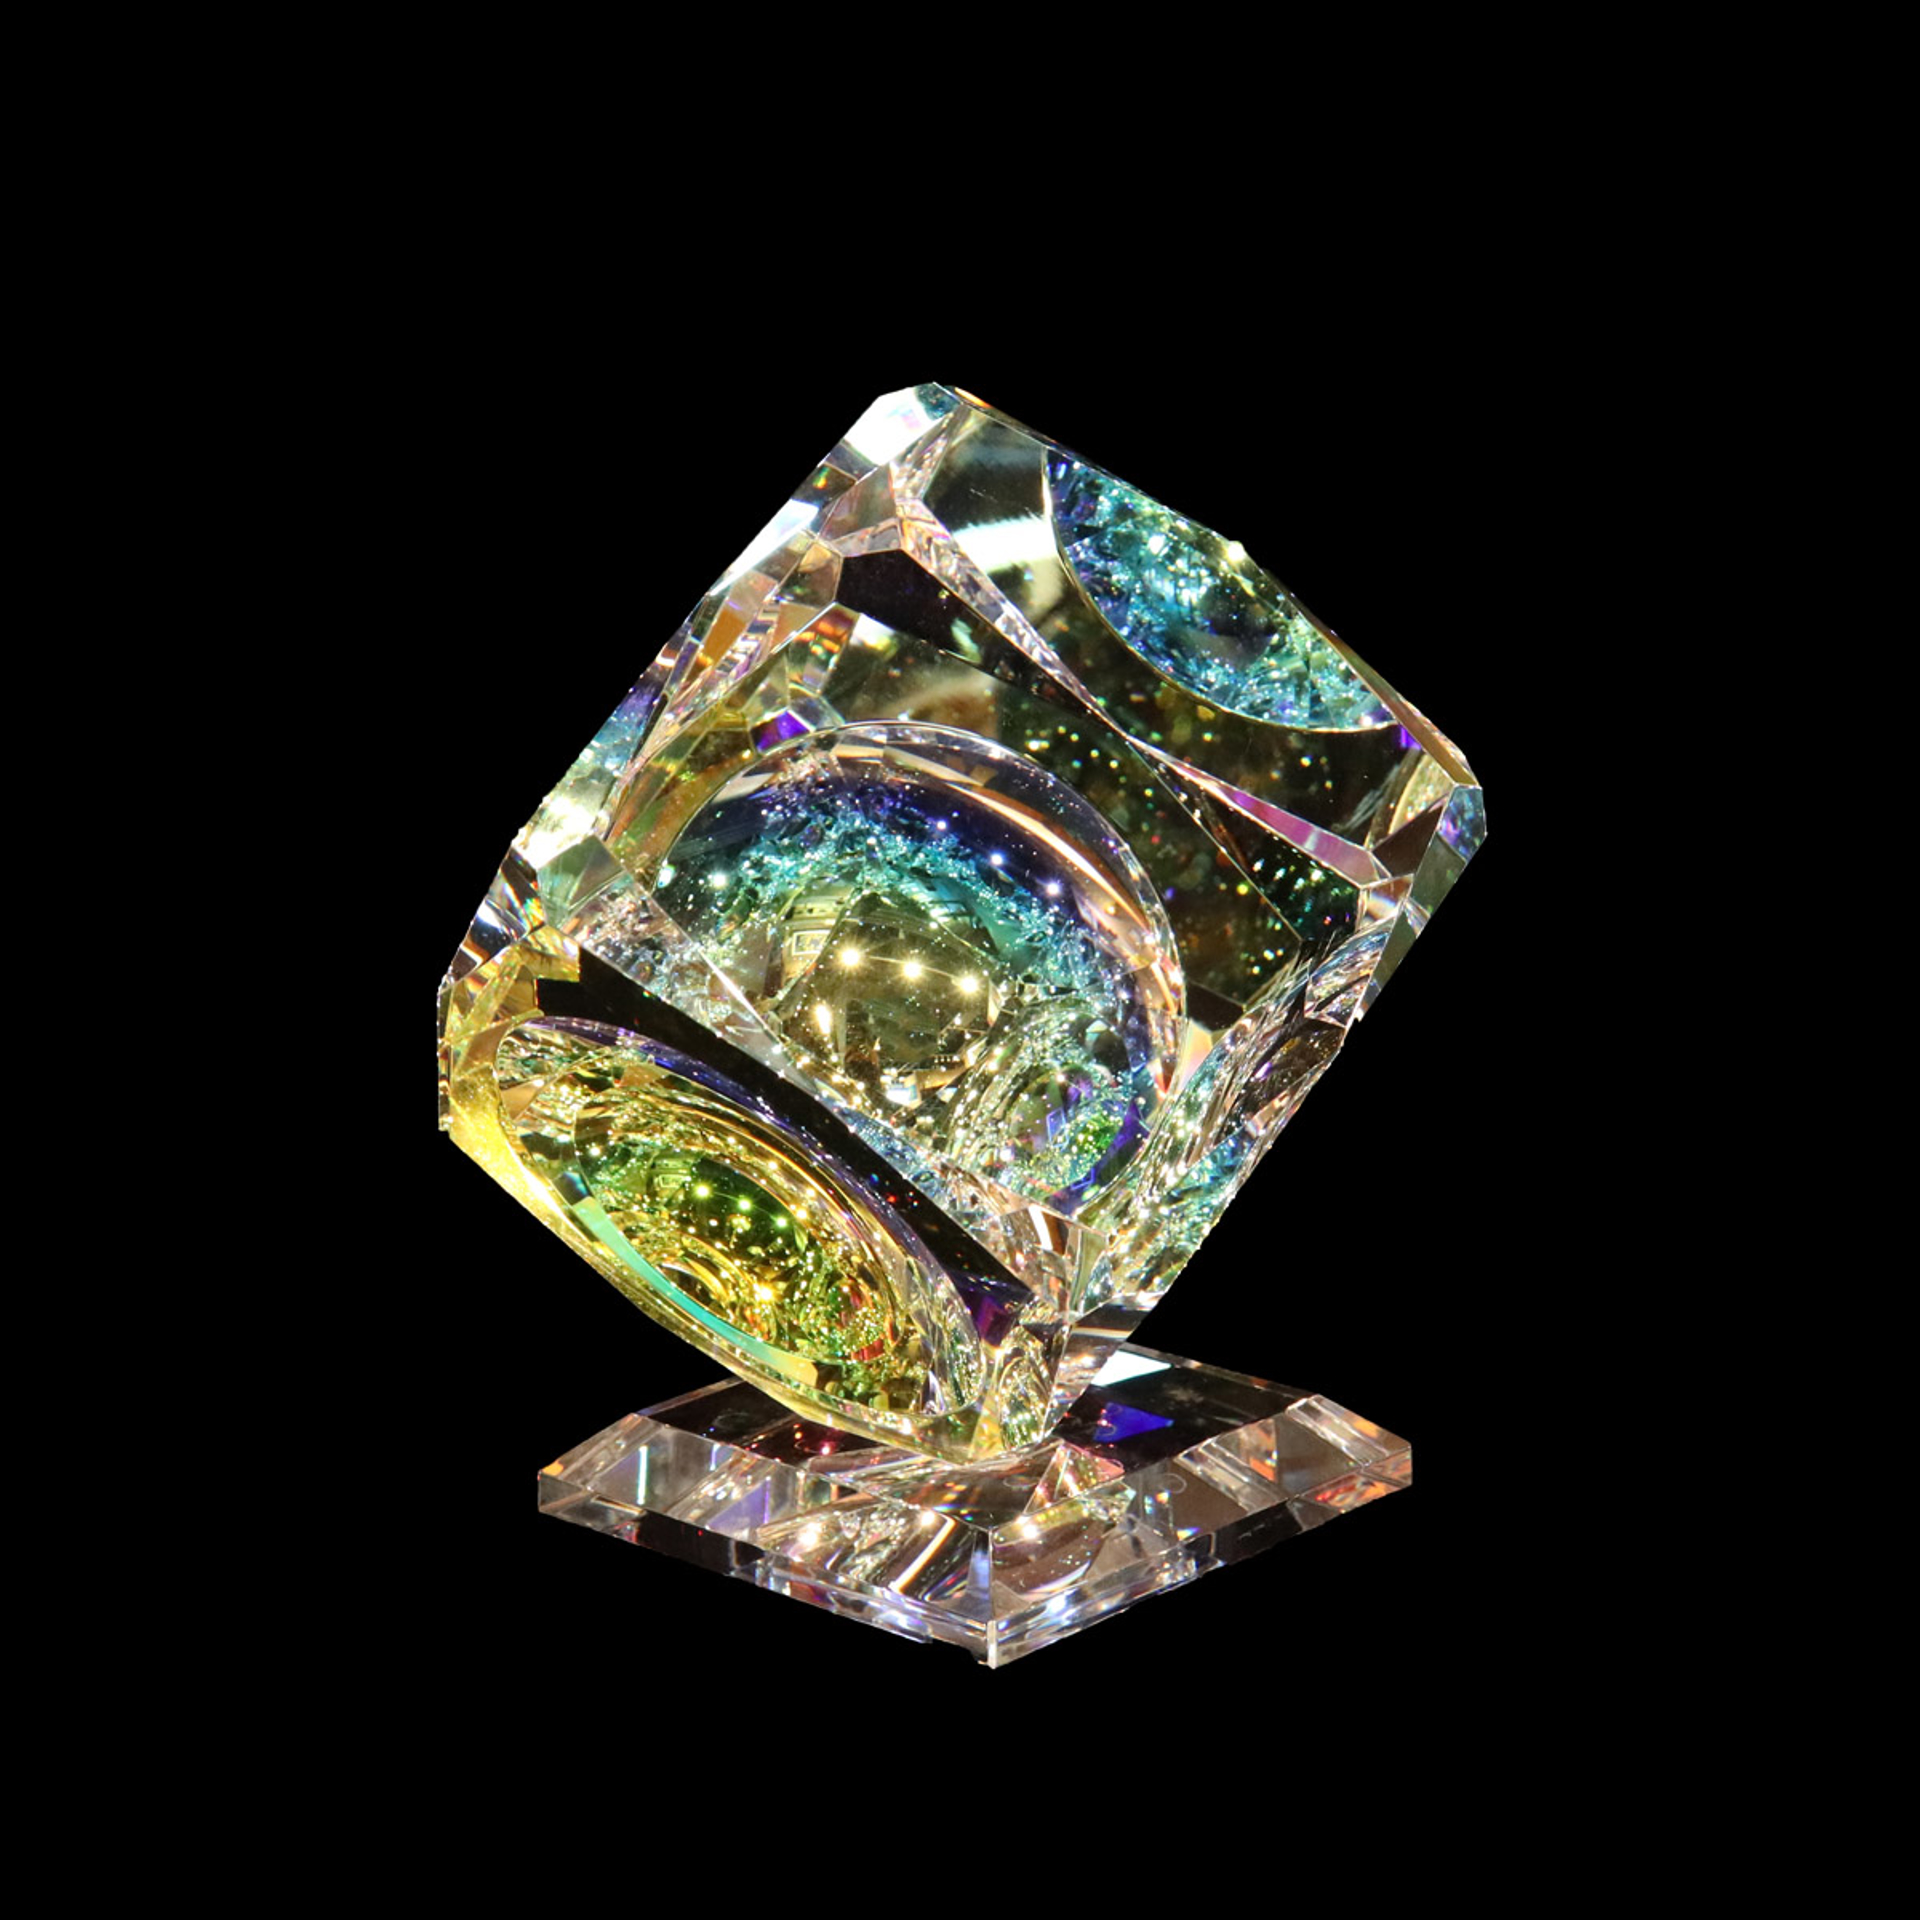 Crystal Cube 100mm(4") "V" Bevel on Base by Harold Lustig